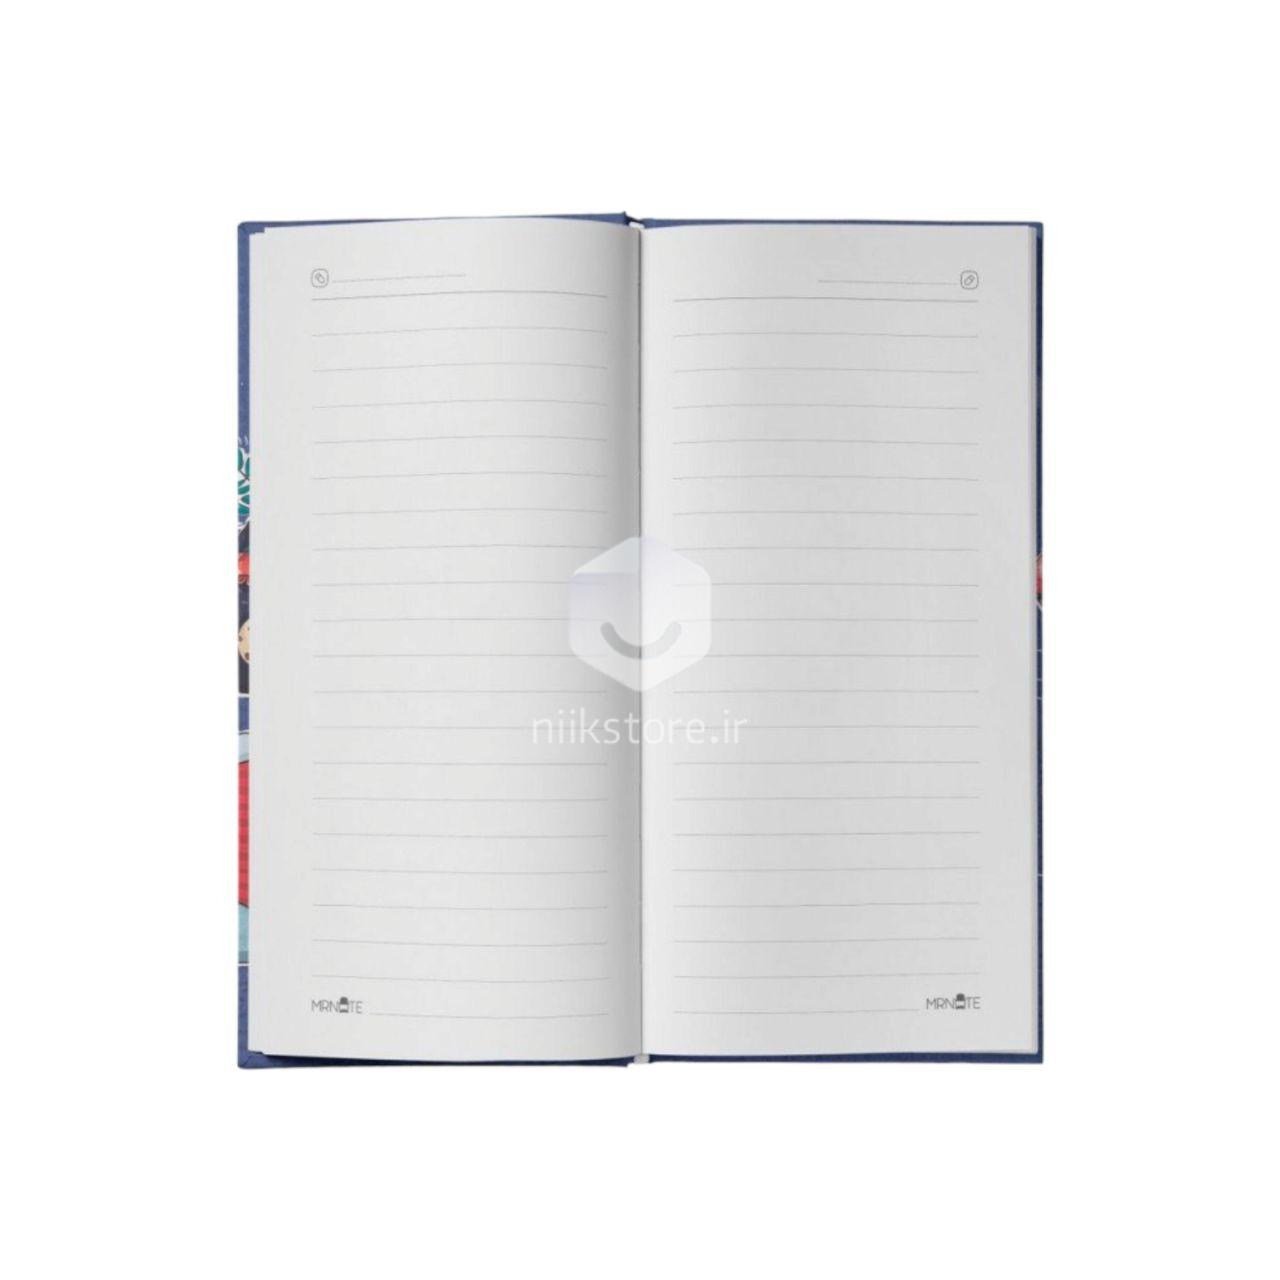 دفتر یادداشت 100 برگ دوختی جلدسخت پالتویی مسترنوت کد 399 محصول